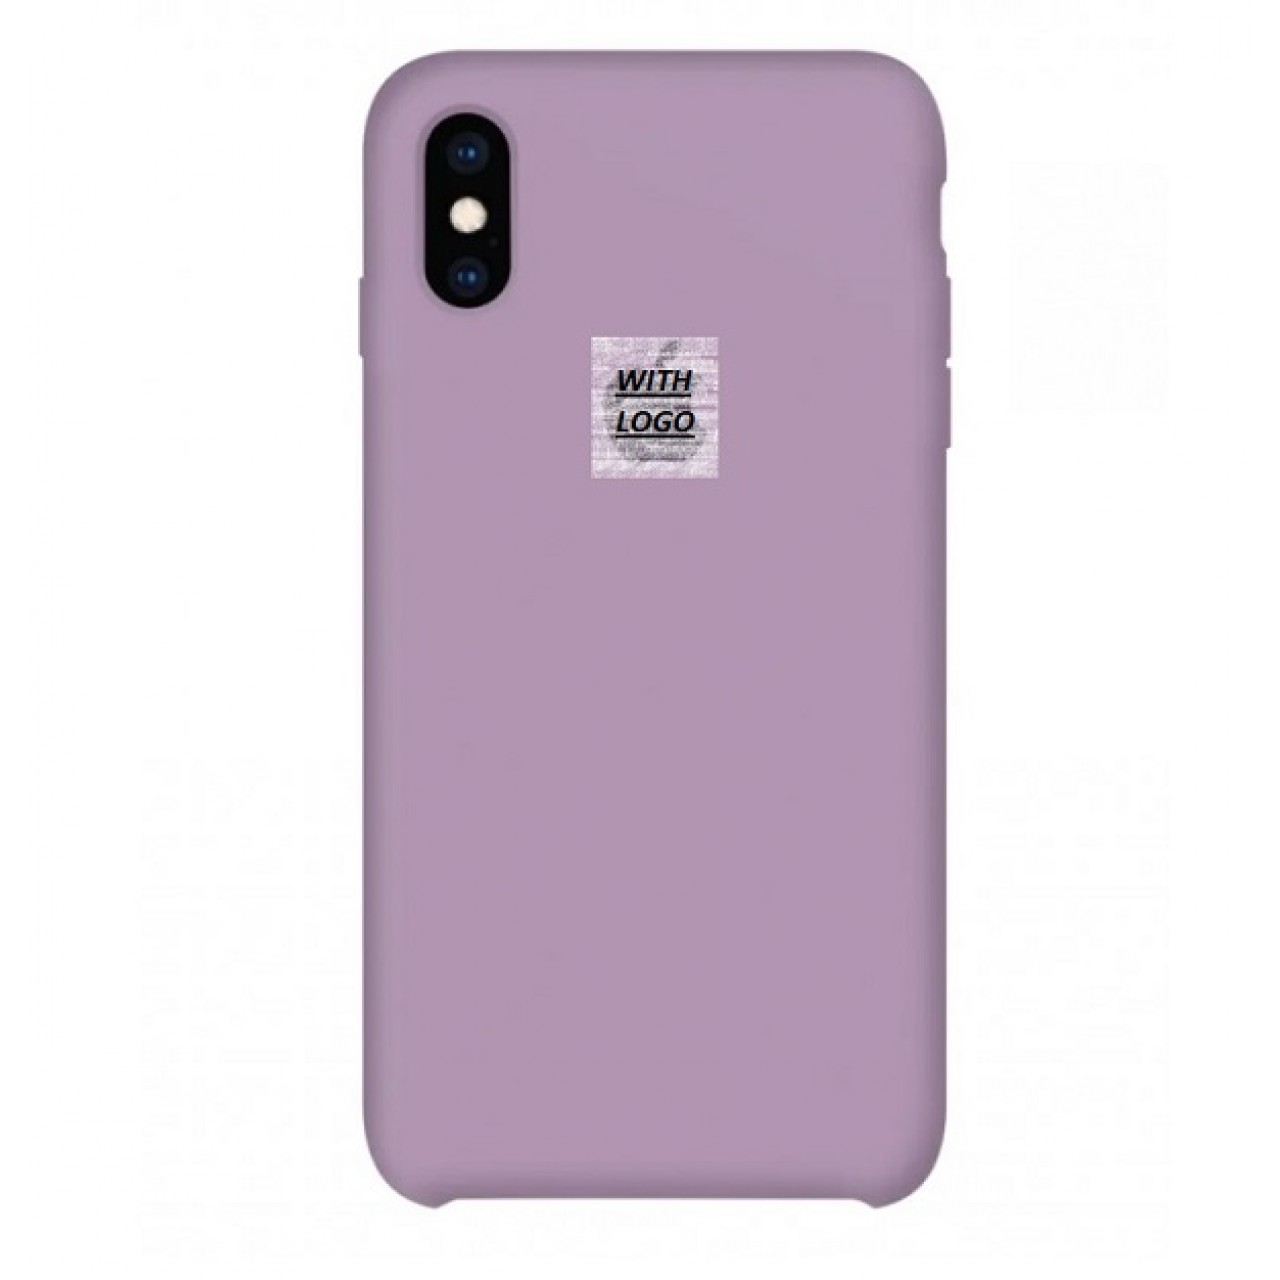 Θήκη Προστασίας Σιλικόνης iPhone XS Max - Back Cover Silicone Case - Blueberry